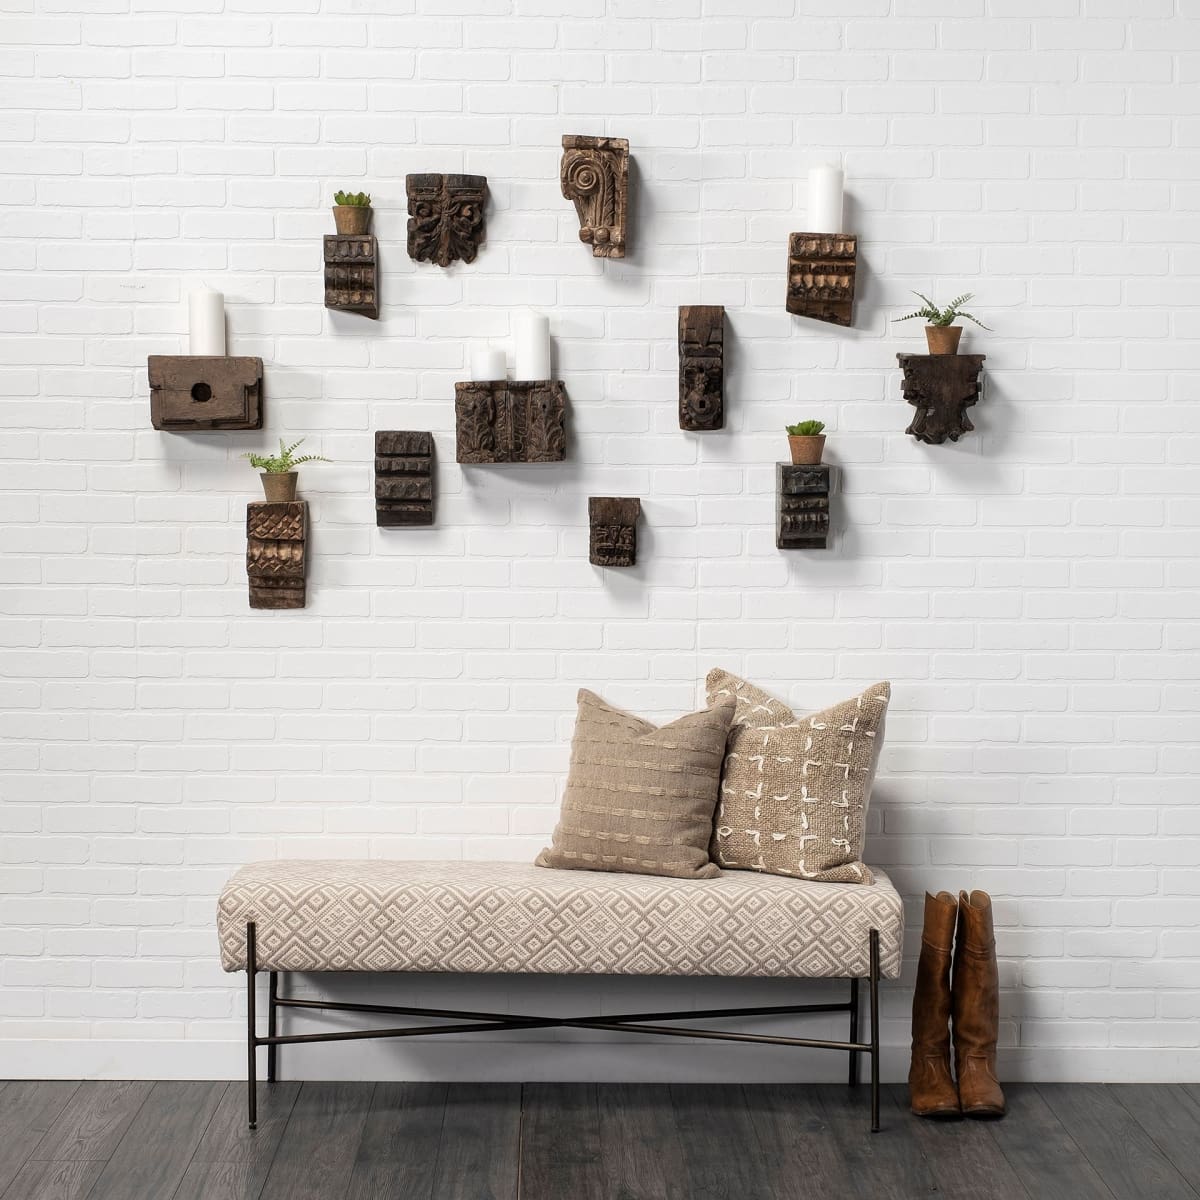 Negundo Wall Decor Reclaimed Wood - alternative-wall-decor